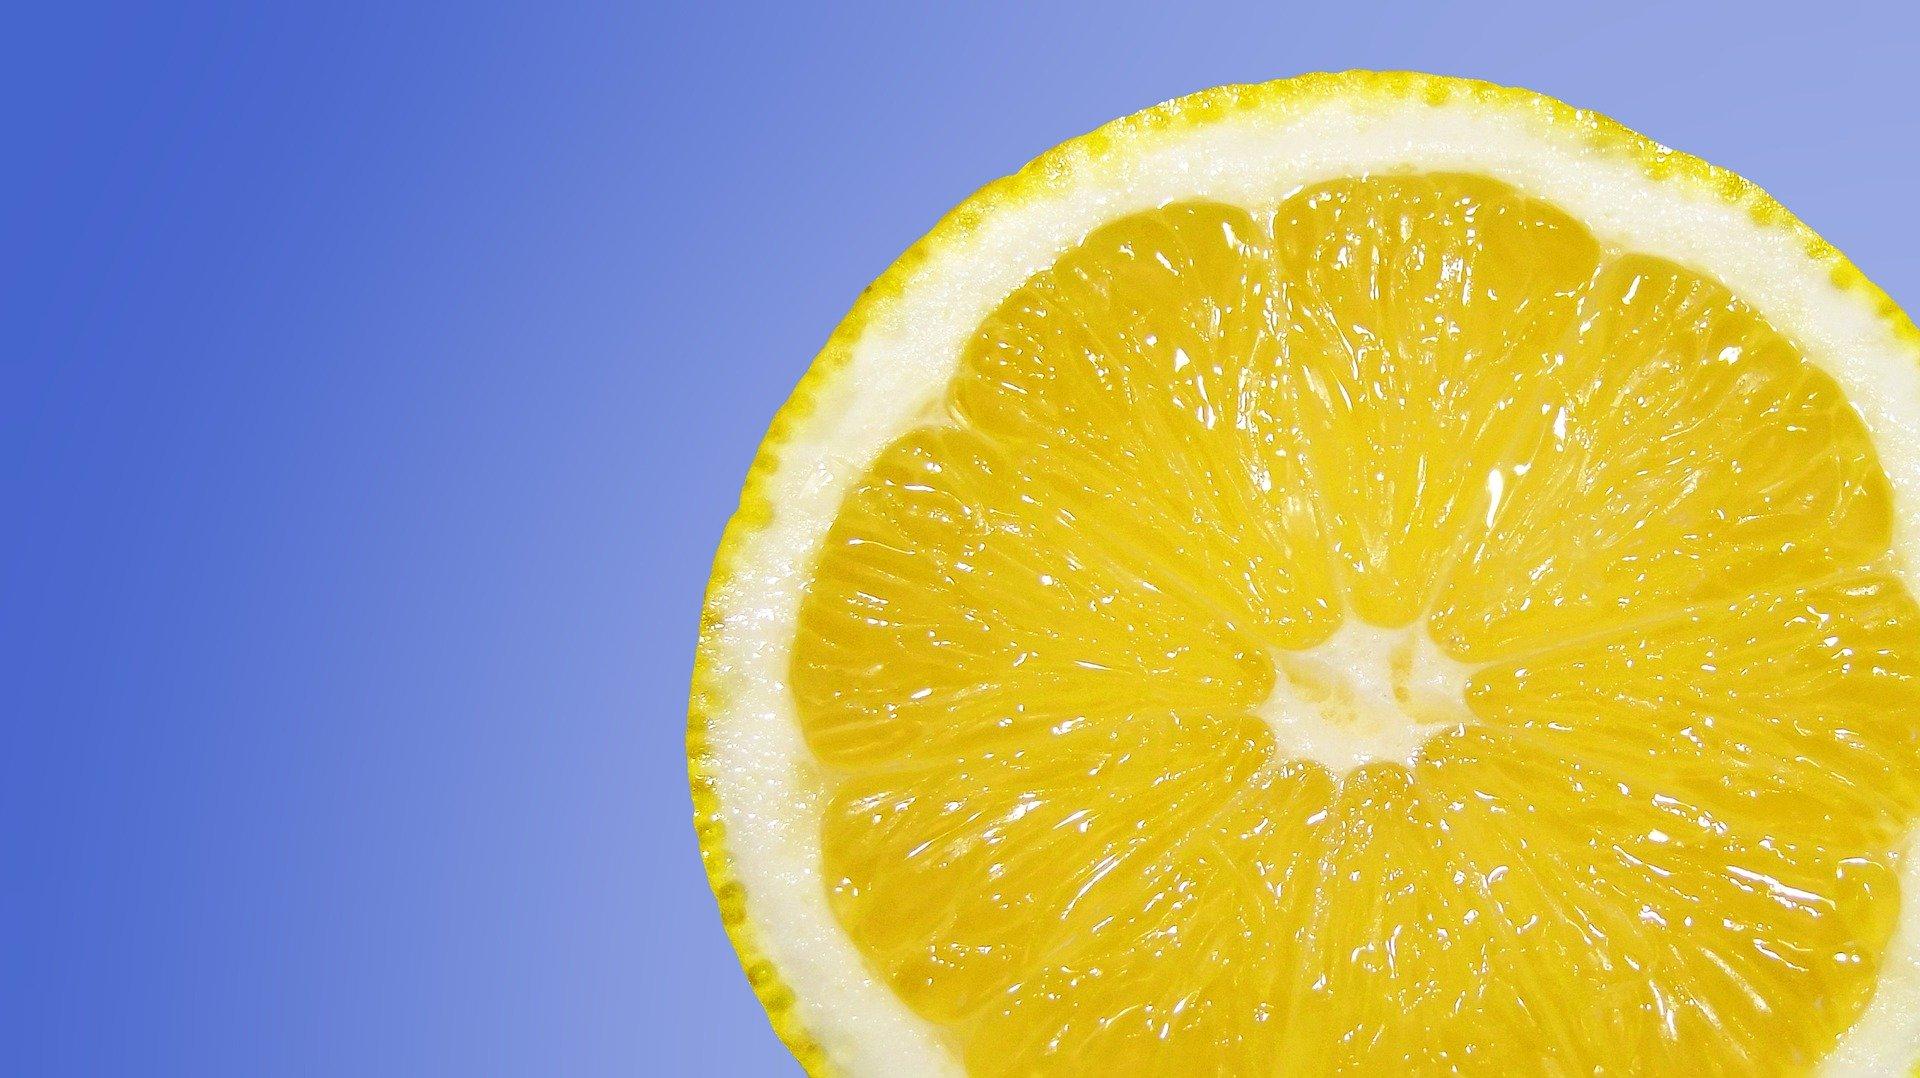 C-vitamiini puolustaa terveyttäsi monin tavoin